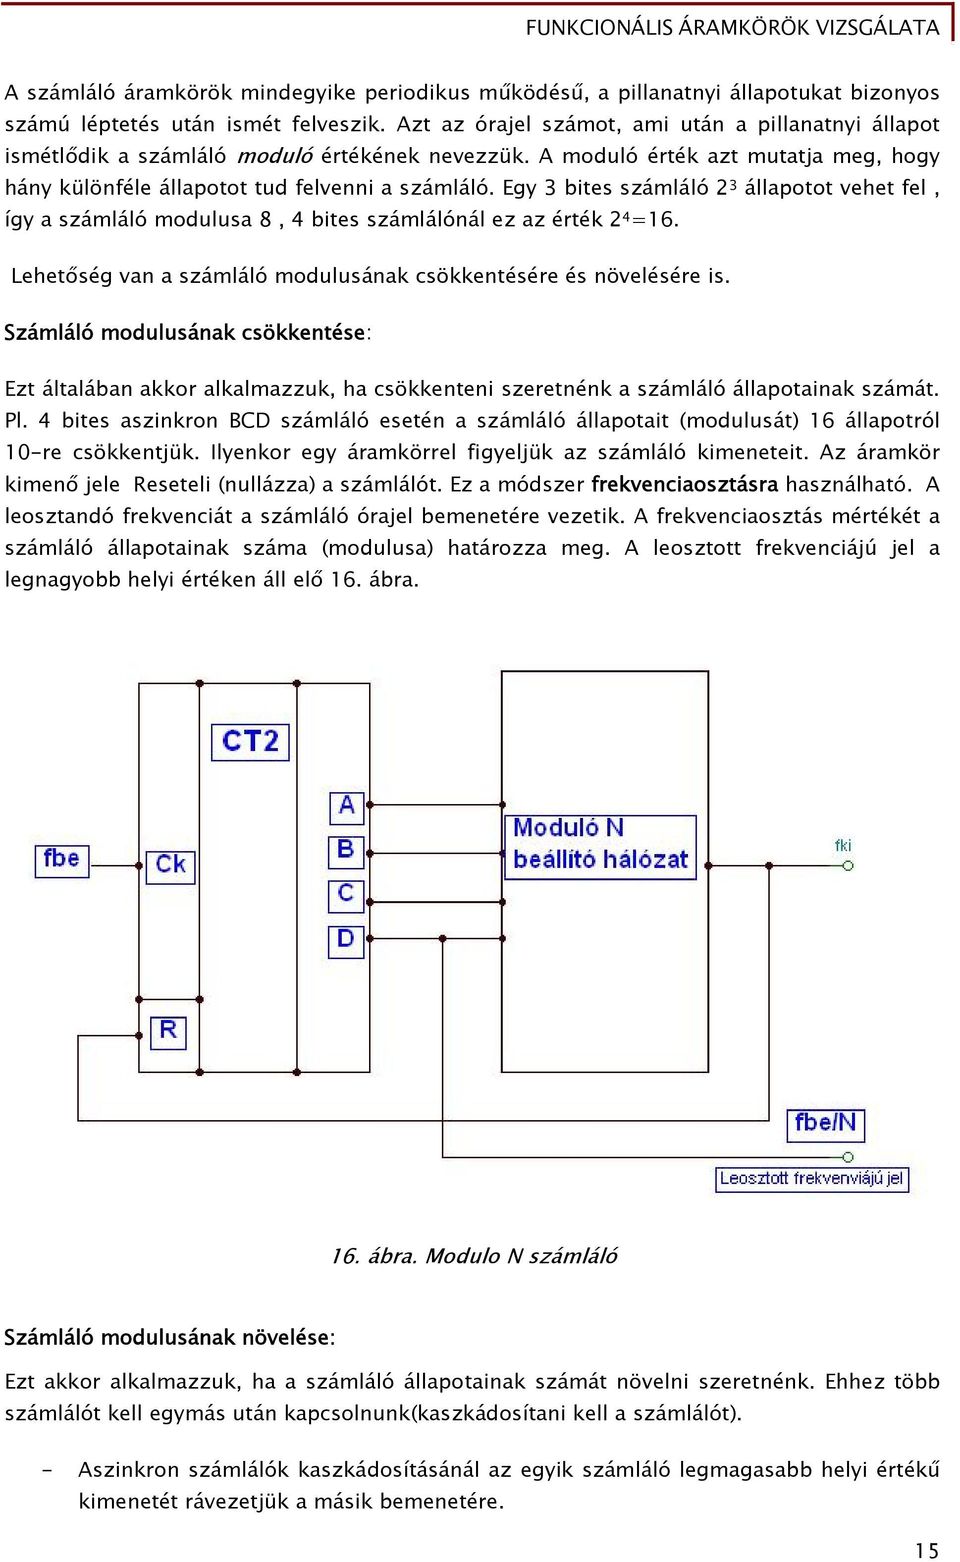 Funkcionális áramkörök vizsgálata - PDF Ingyenes letöltés